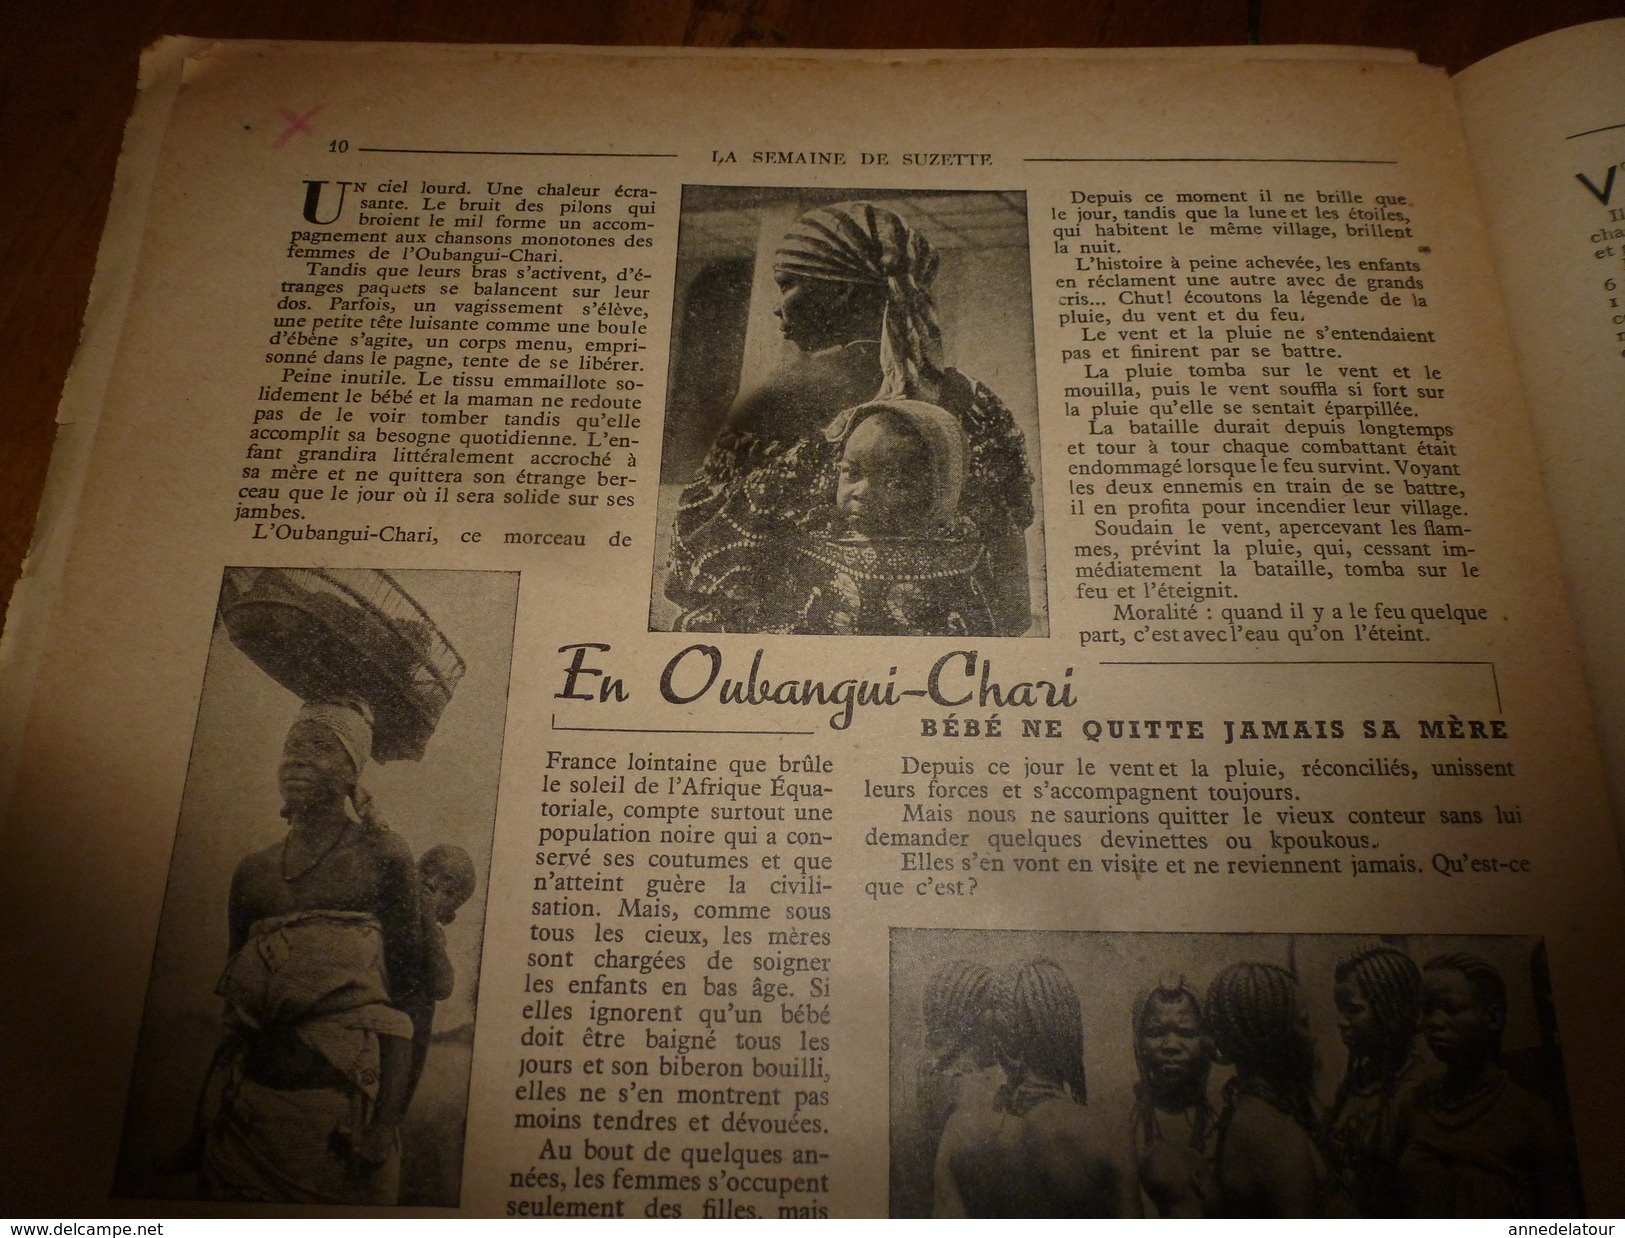 1950  LSDS  (La Semaine de Suzette) Calendrier 1793; Film JEANNE d'ARC; En Oubangui-Chari; etc